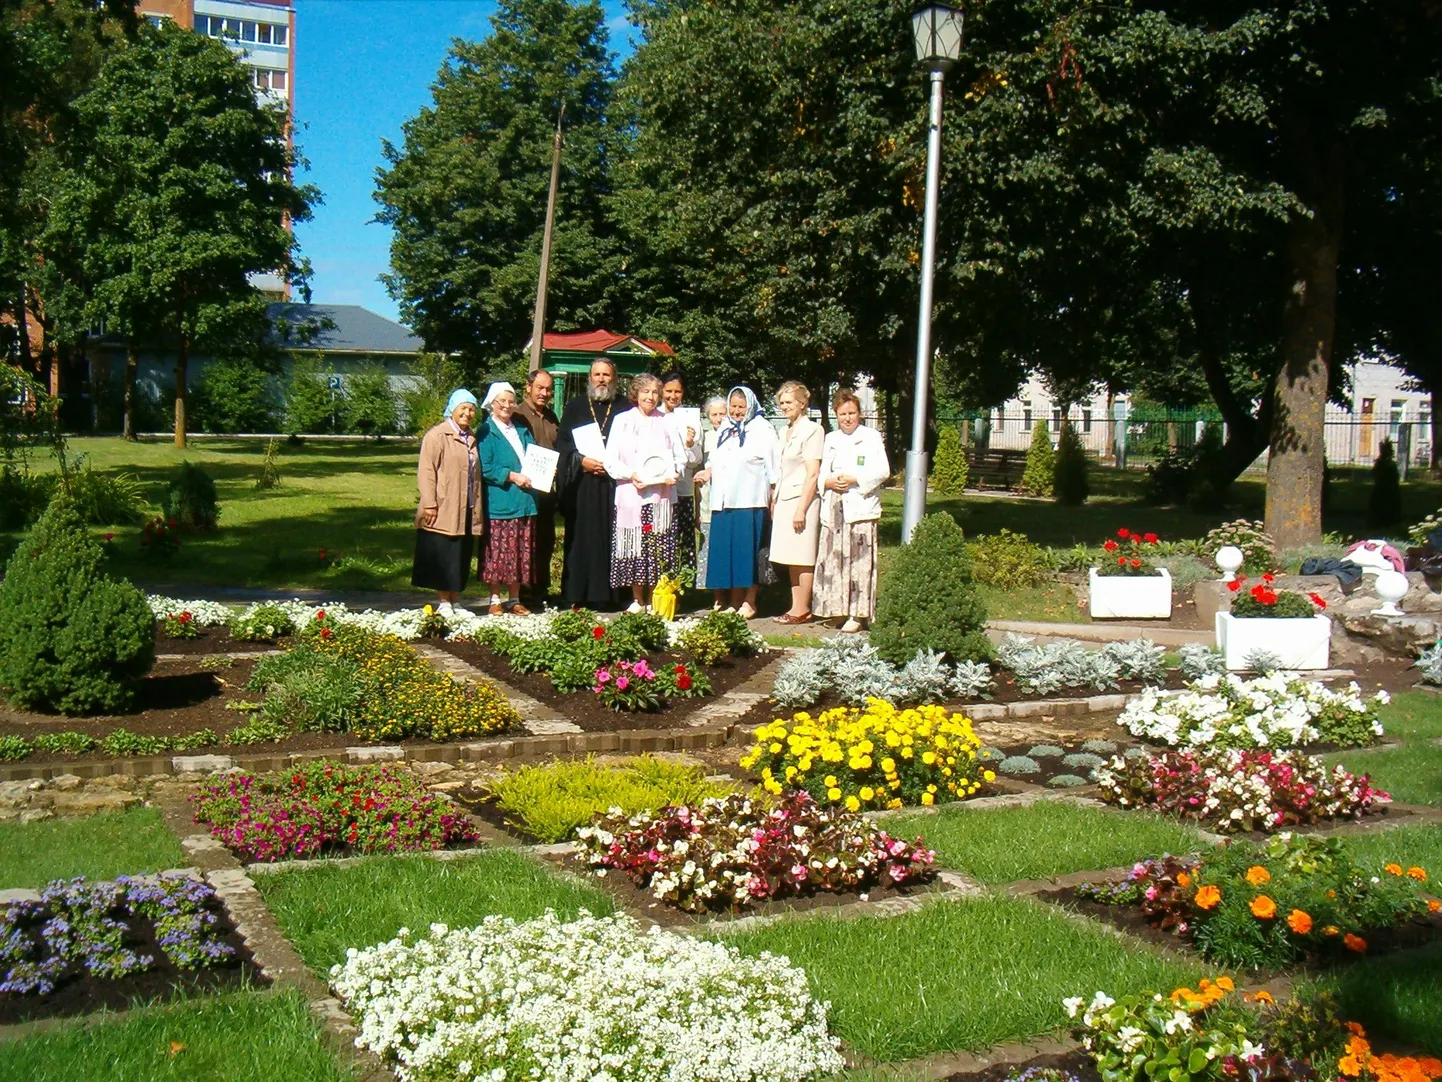 Служители церкви Казанской иконы Божьей матери и их помощники в саду у здания церкви.